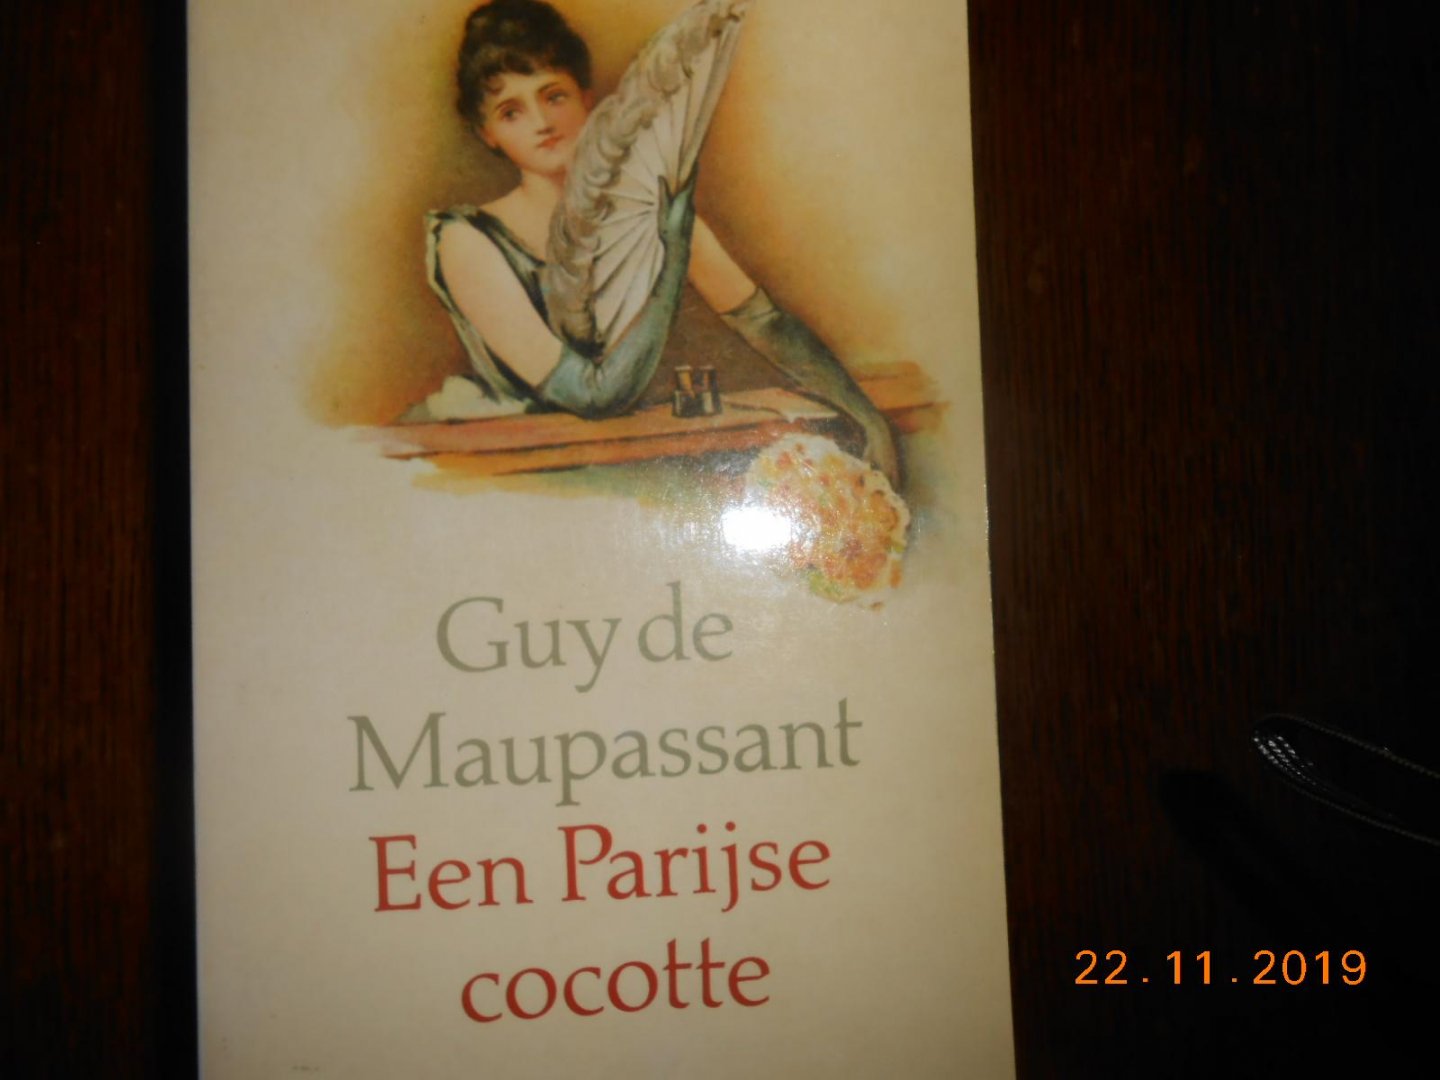 Maupassant, G. de - Paryse cocotte / druk 1